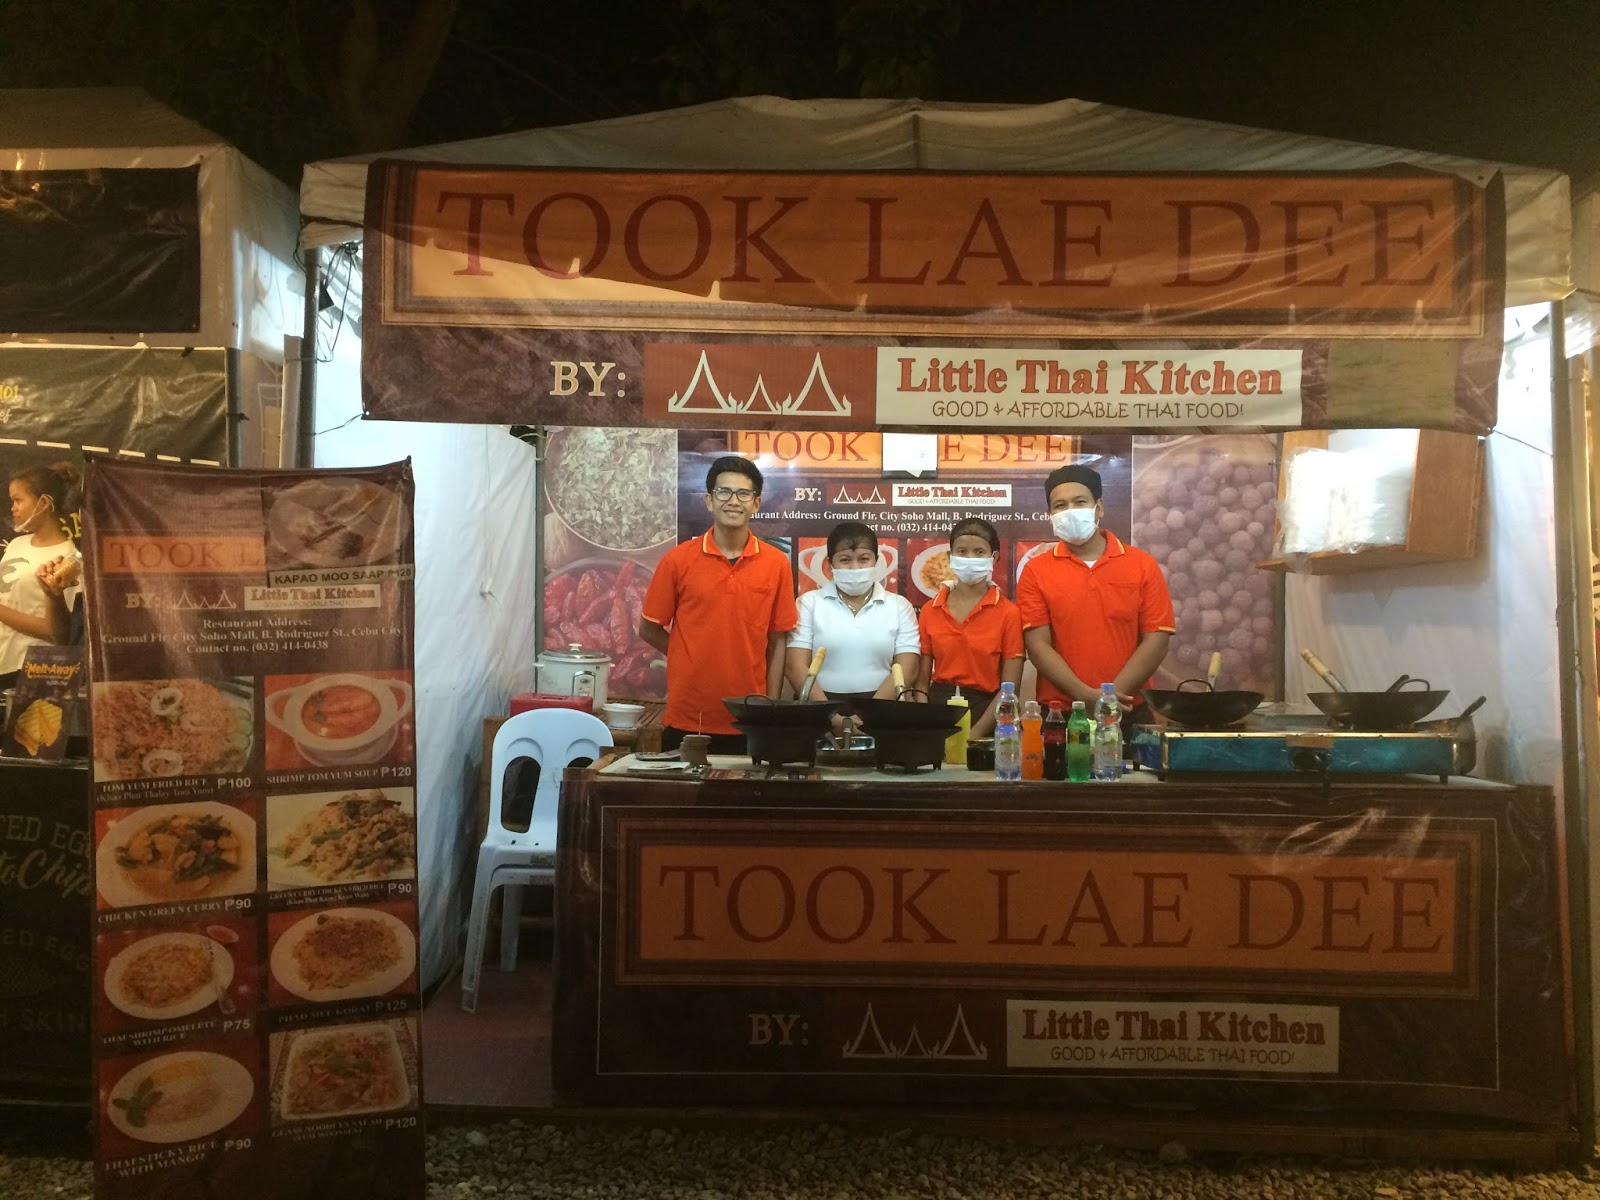 Sugbo Mercado Our Foodtrepreneur Of The Week Took Lae Dee